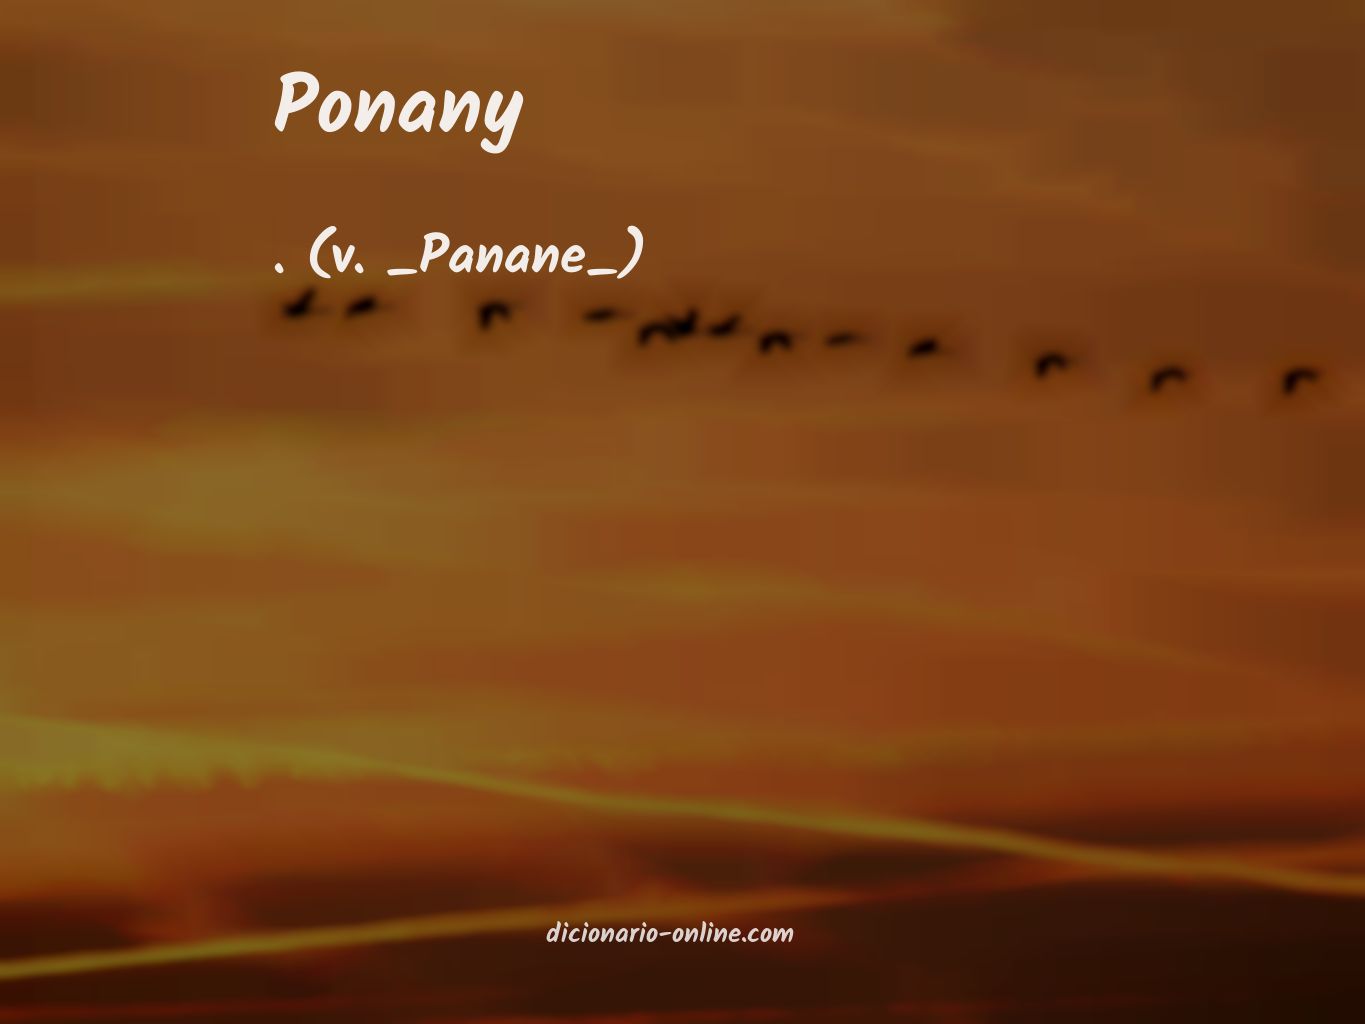 Significado de ponany